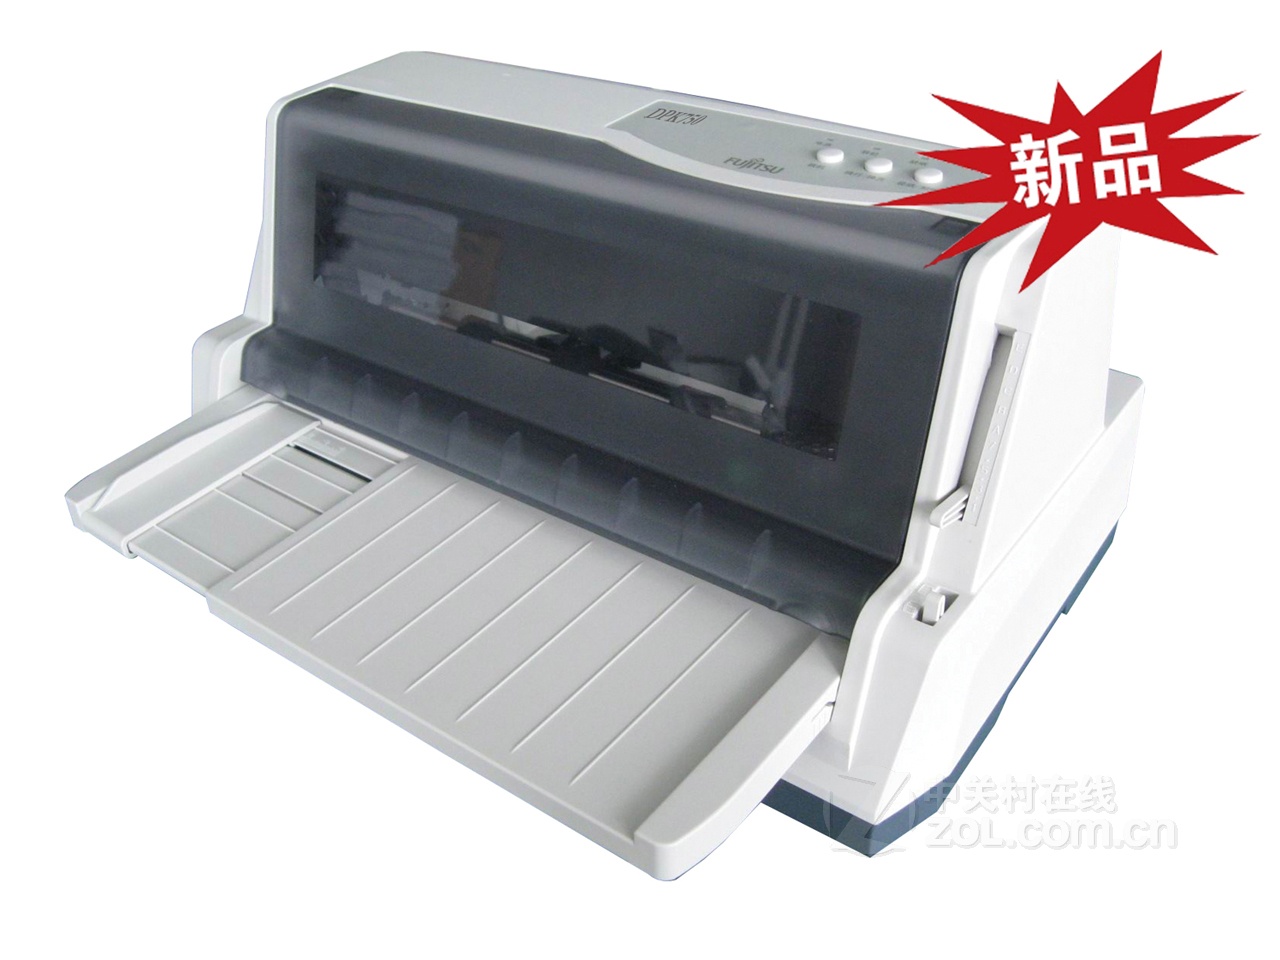 富士通DPK750Pro打印機